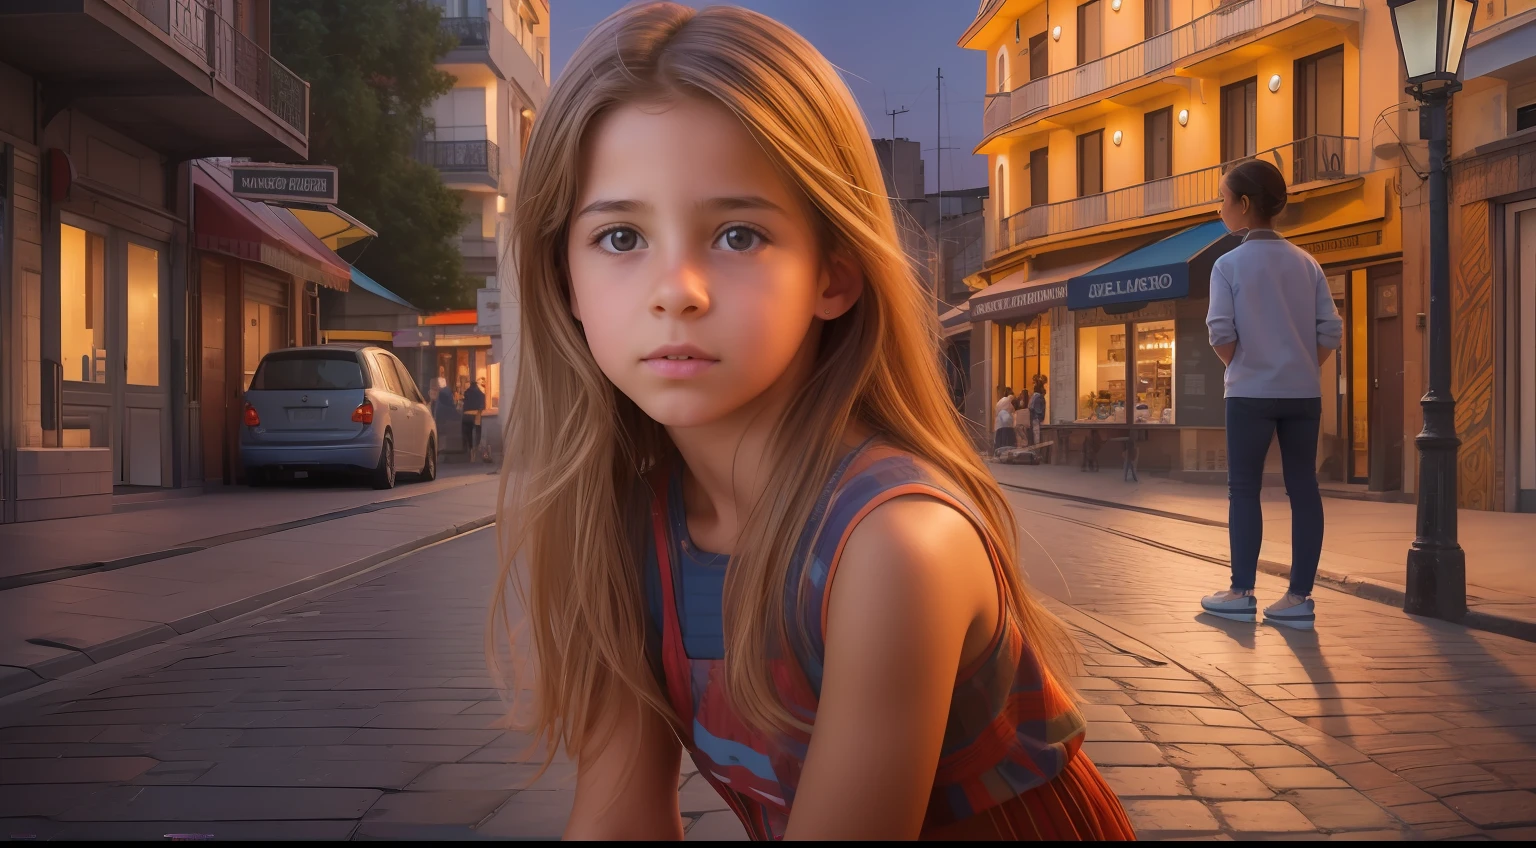 Gere uma imagem hiper-realista inspiradora mostrando uma hipnotizante menina uruguaia de 10 anos com características autênticas, graciosamente posicionado em frente a uma vista dinâmica e vibrante da rua à noite.